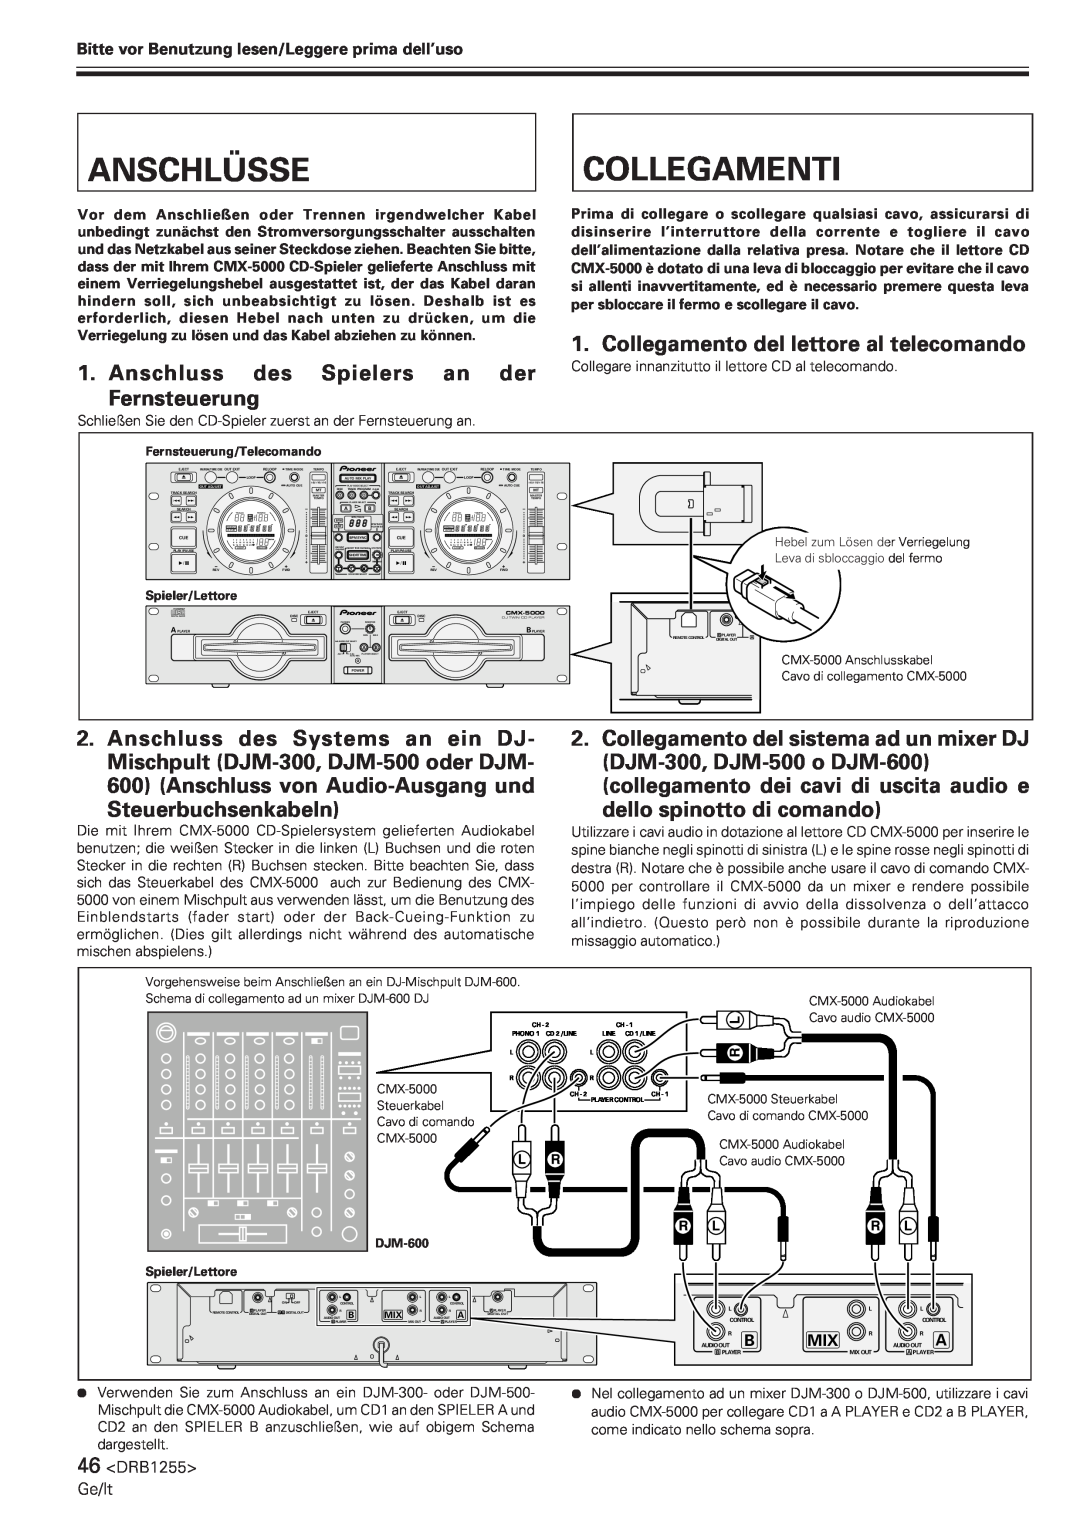 Pioneer CMX-5000 manual Anschlüsse, Collegamenti, Collegamento del lettore al telecomando, Anschluss des Spielers an der 